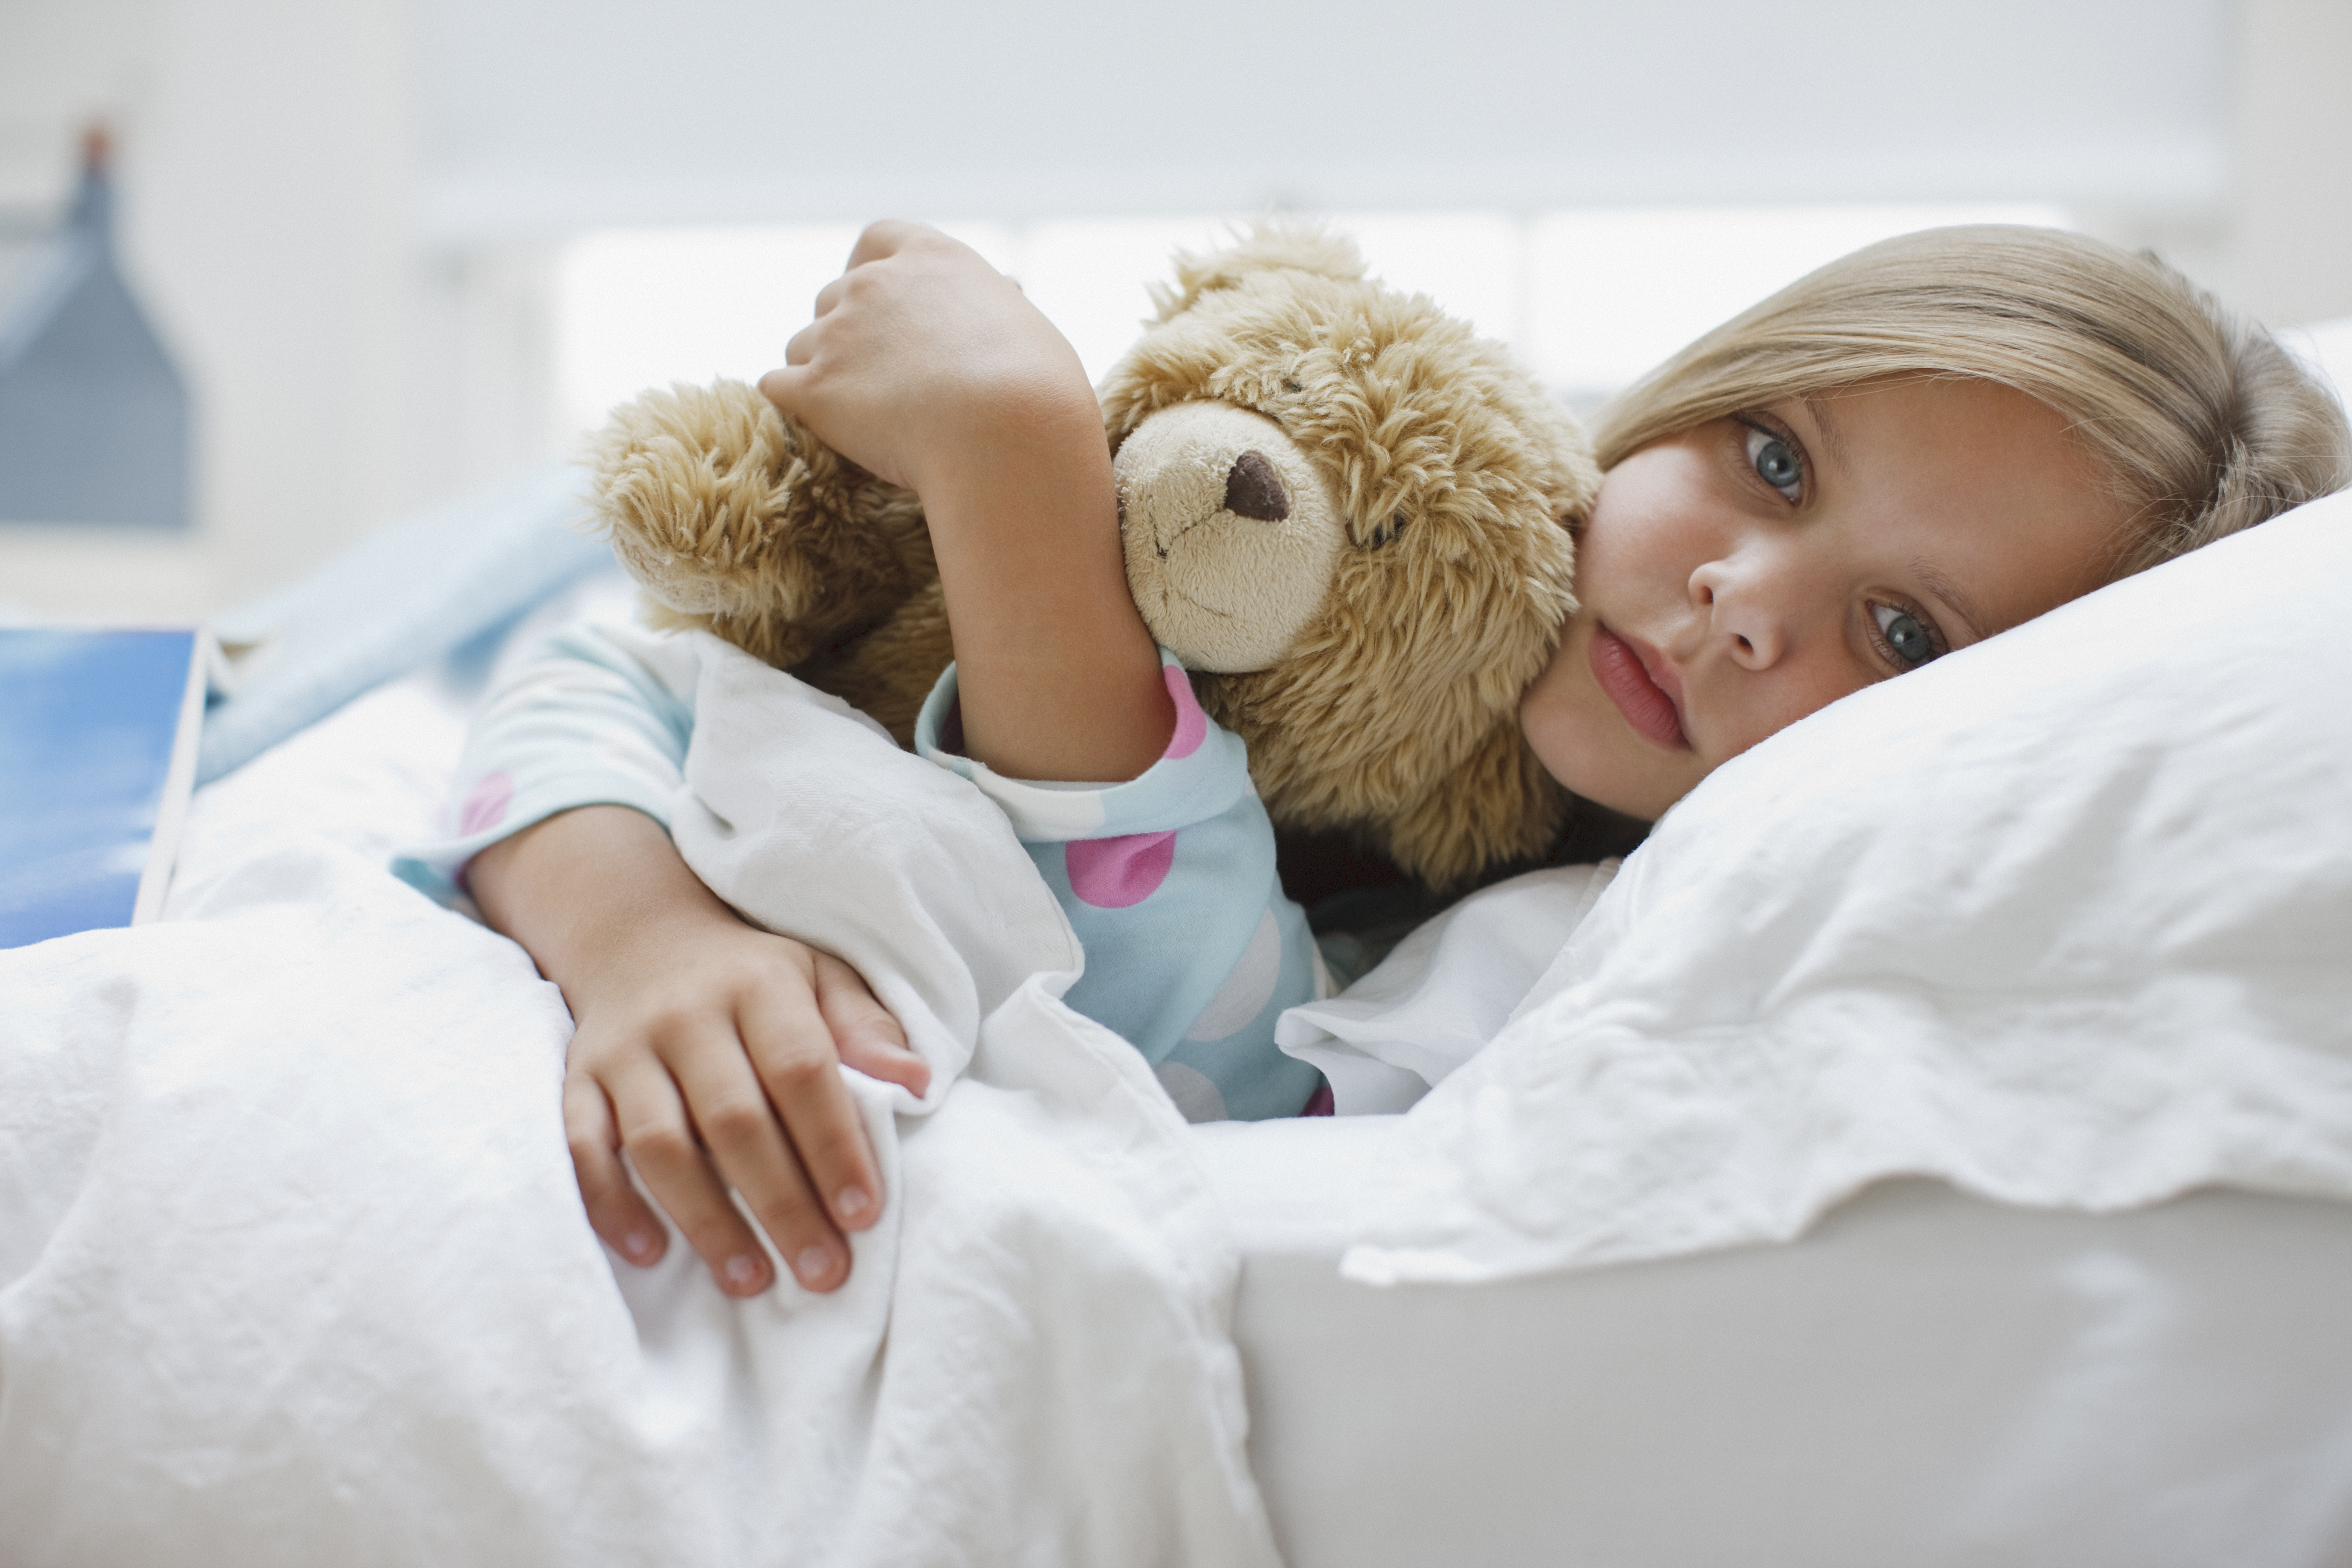 Une fille malade couchée dans son lit avec un ours en peluche | Source : Getty Images